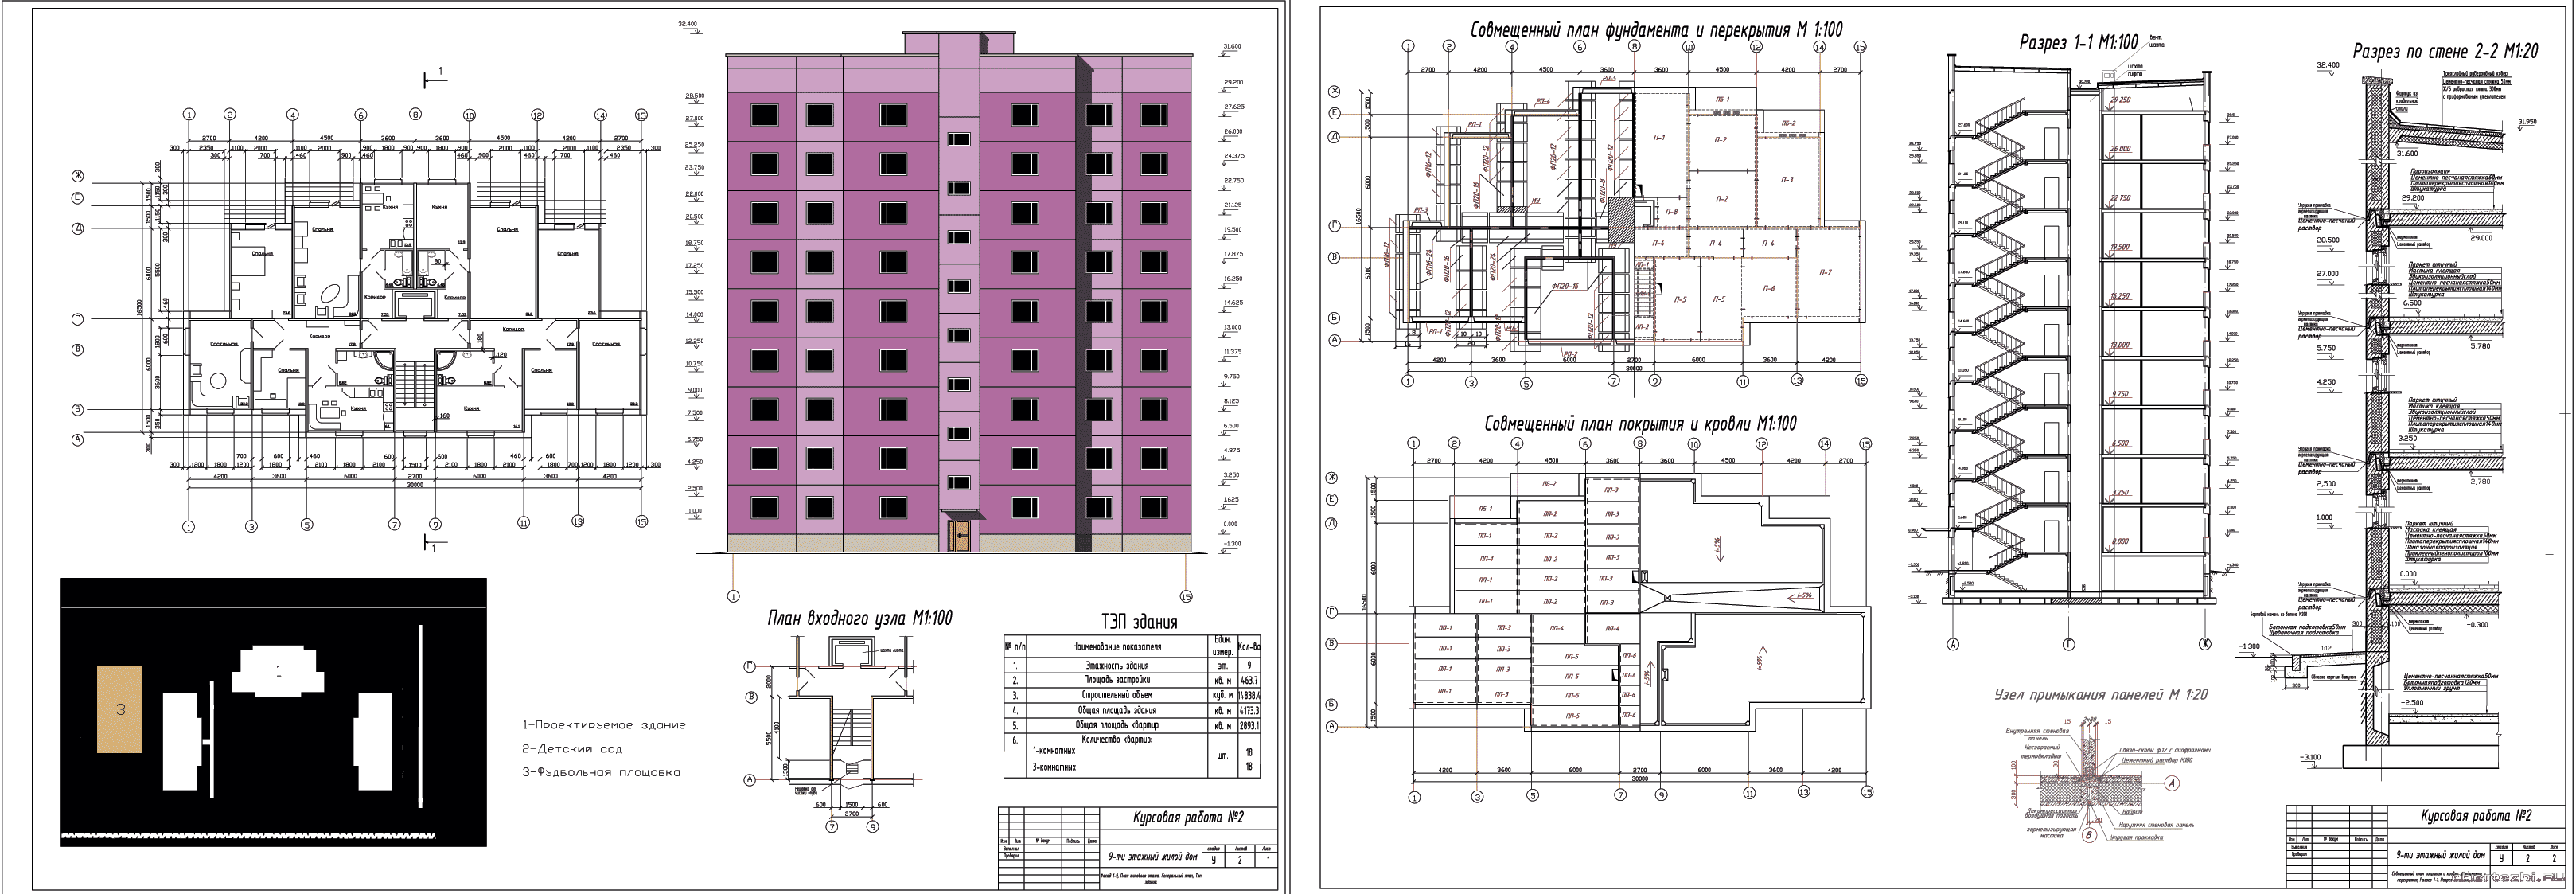 Курсовая работа: Завод наружных панелей для 16-ти этажных домов